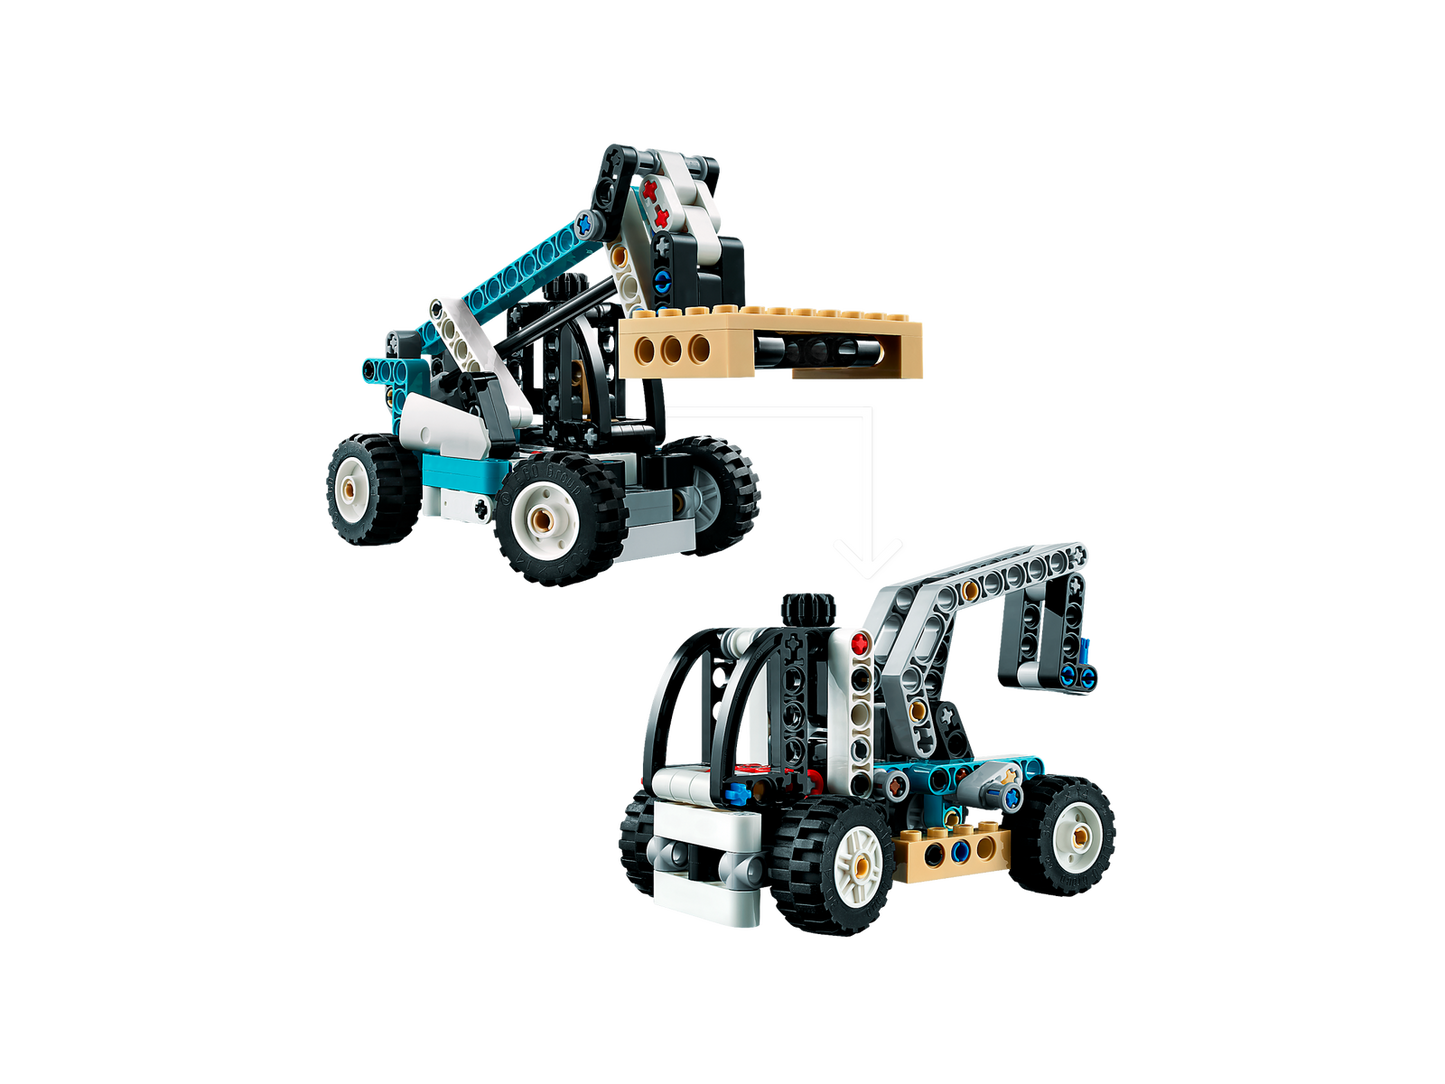 LEGO Technic Telehandler 42133